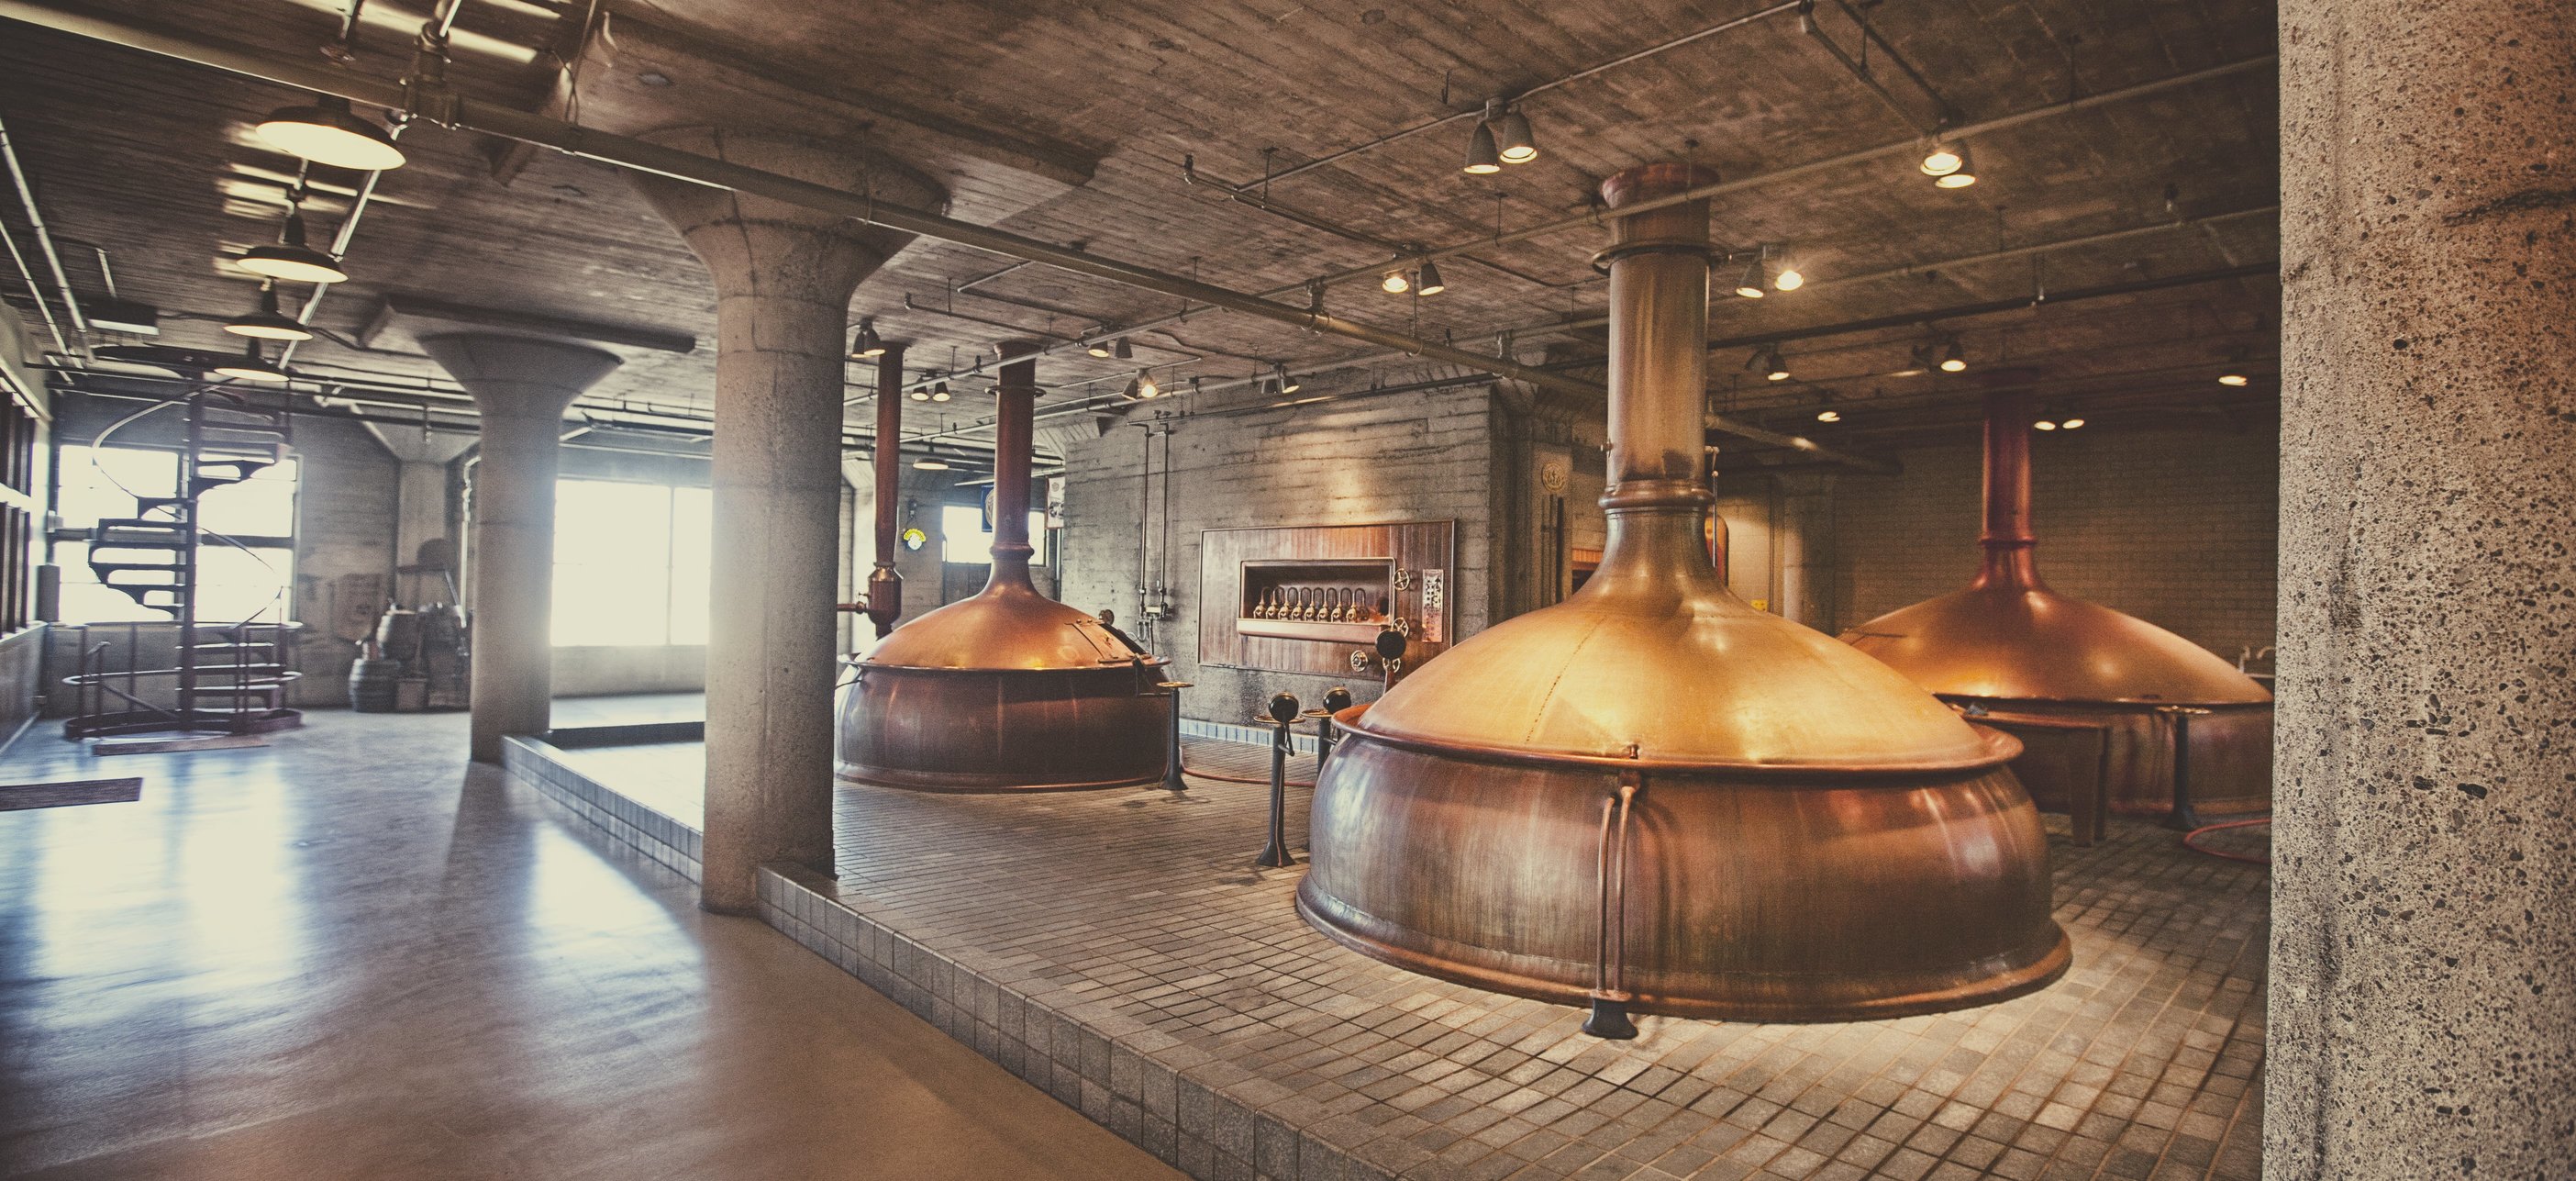 Старая пивоварня. Пивоваренный завод Германия. Музей пивоварня Штигль. Старинная пивоварня.